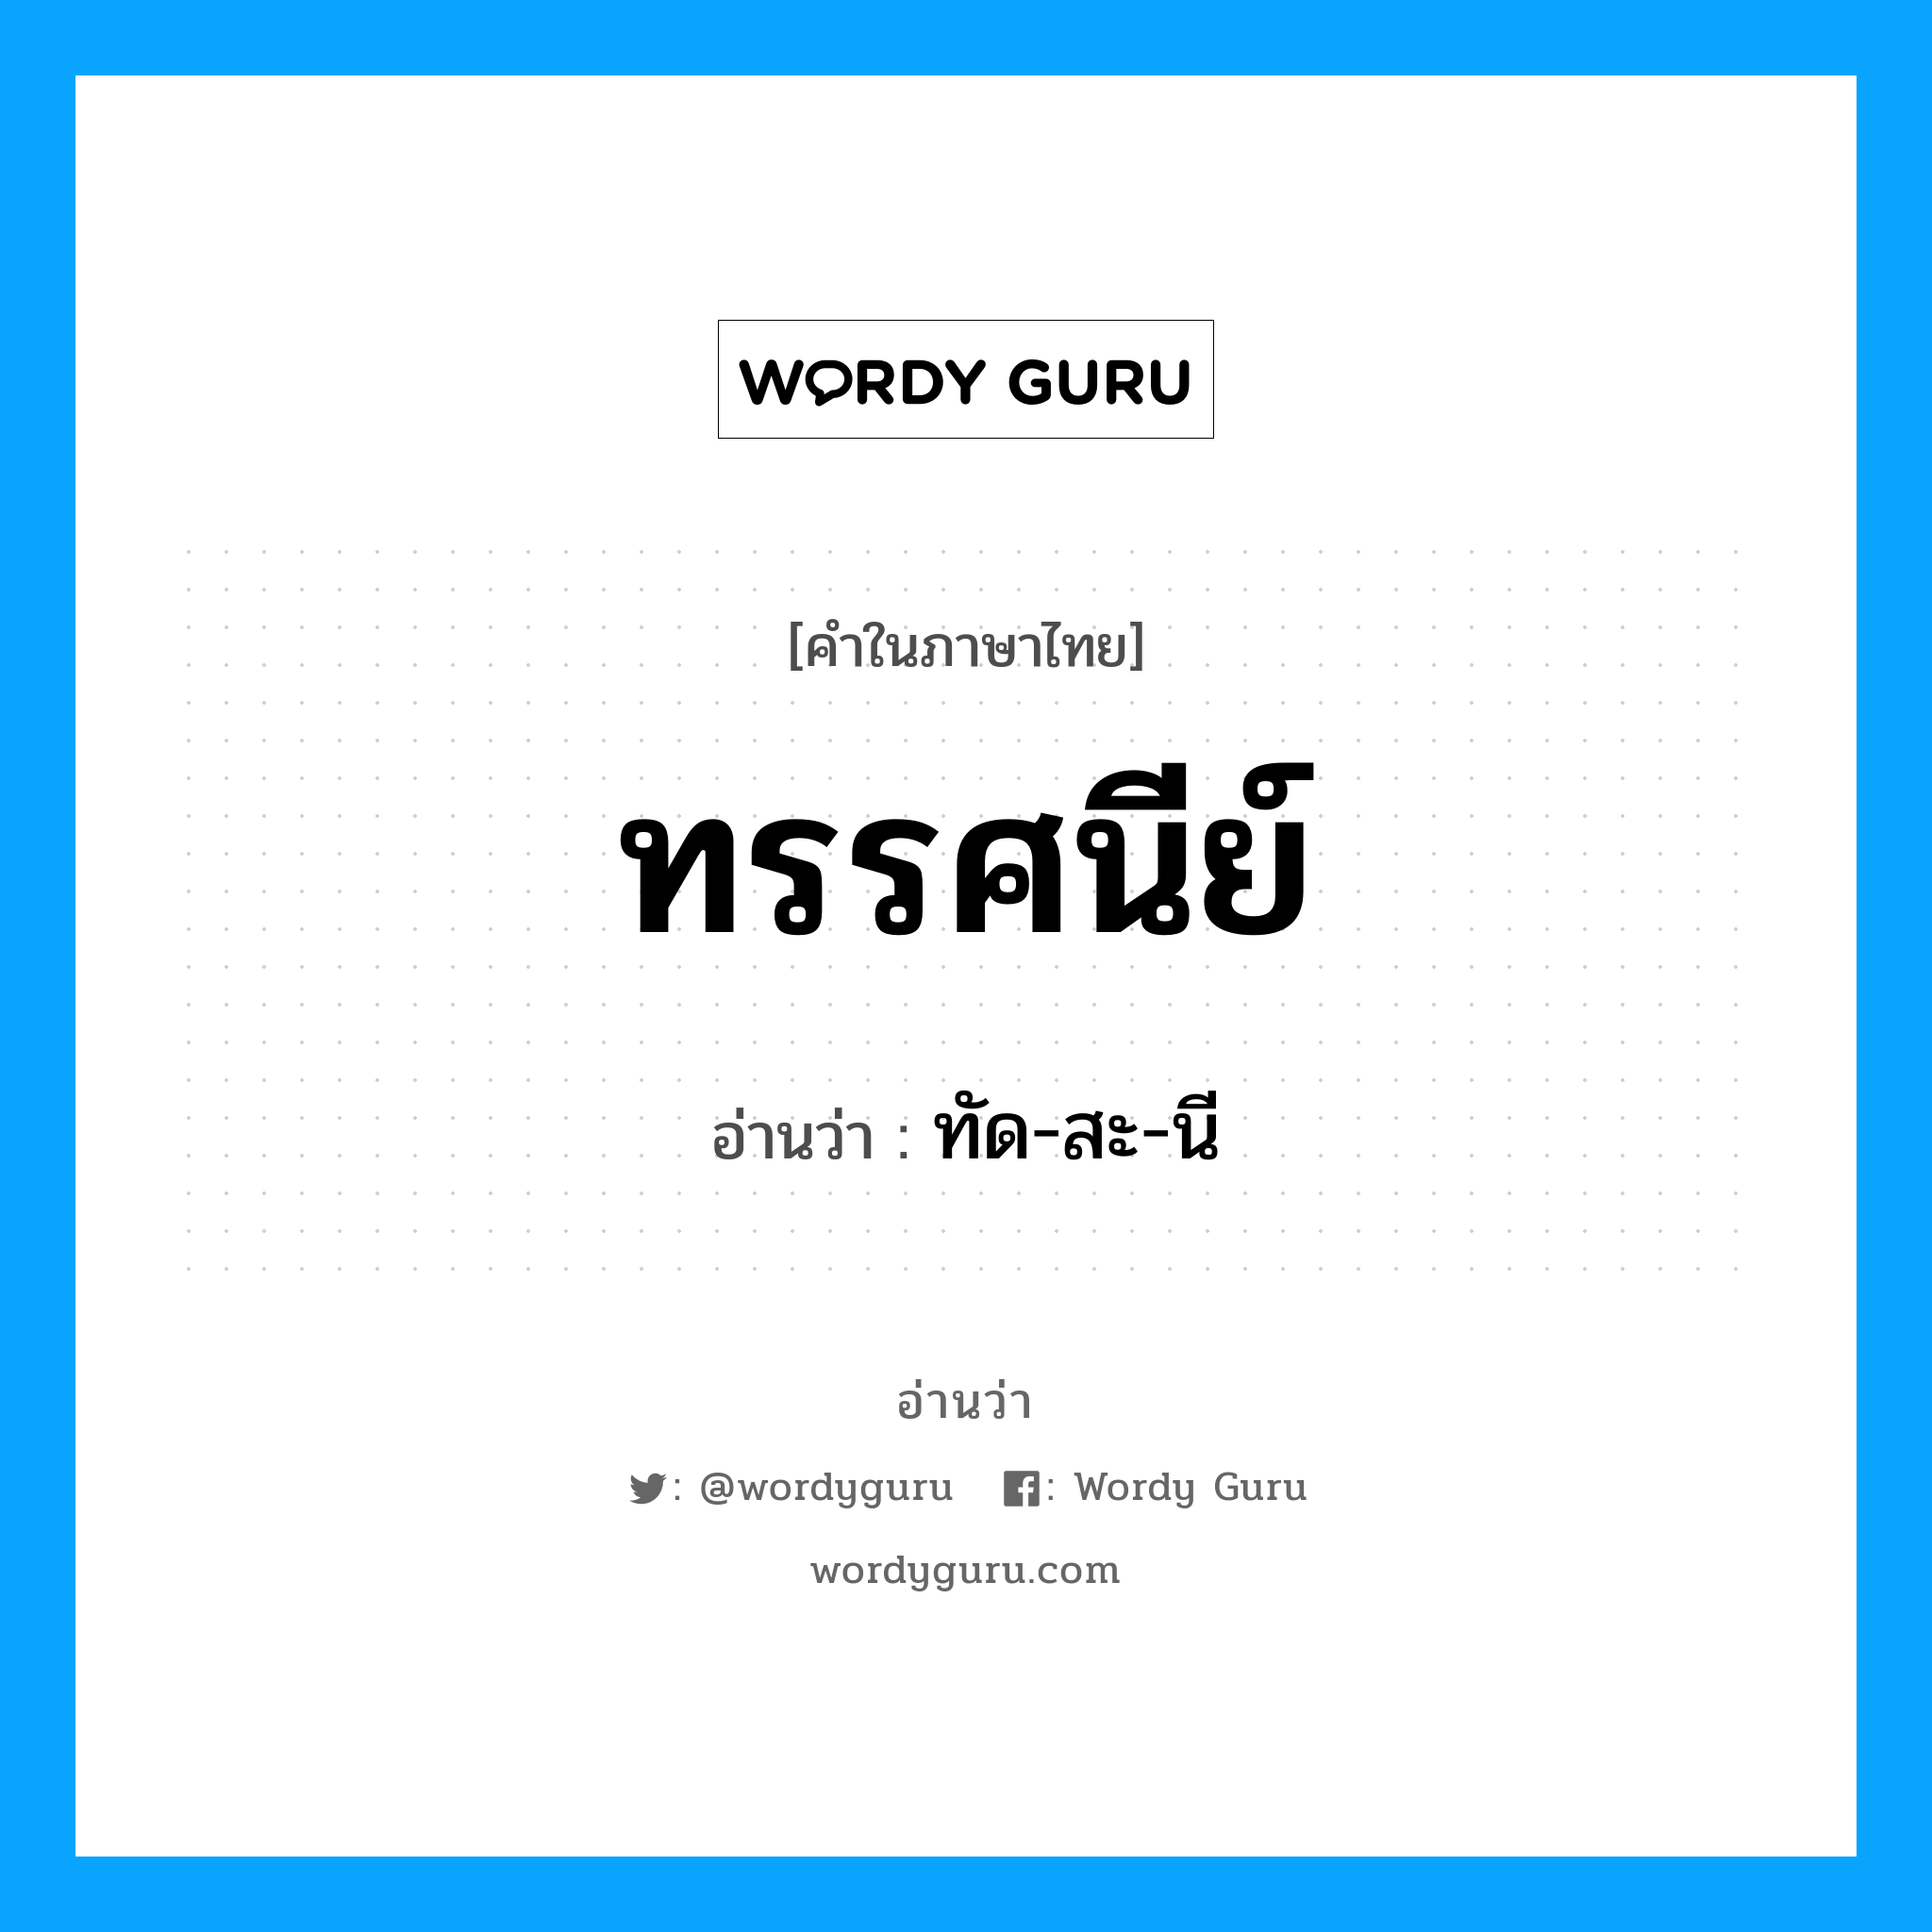 ทัด-สะ-นี เป็นคำอ่านของคำไหน?, คำในภาษาไทย ทัด-สะ-นี อ่านว่า ทรรศนีย์